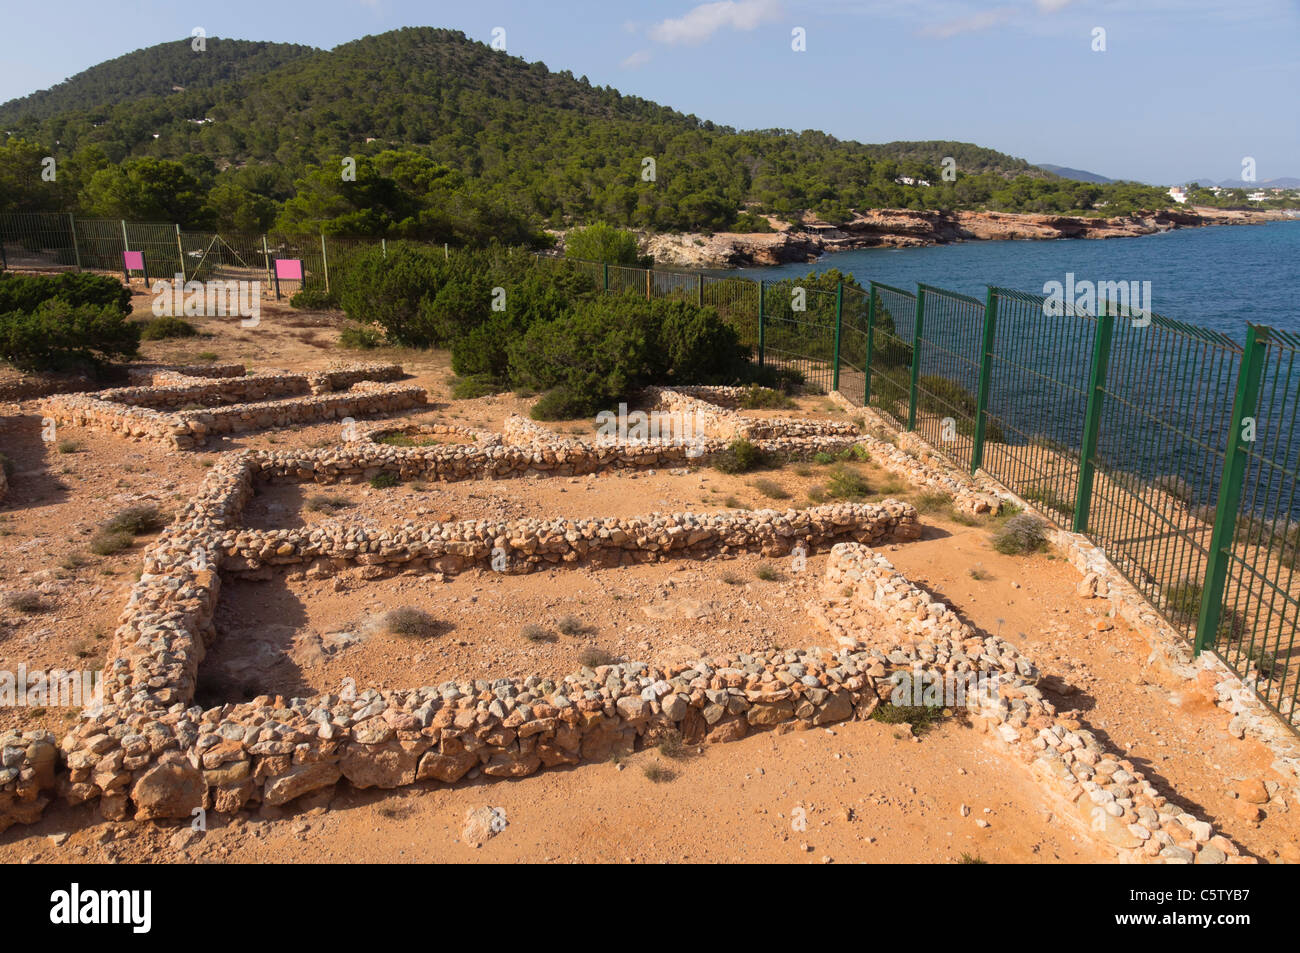 Ibiza, Balearen, Spanien - Sa Caleta, punischen Siedlung archäologische Stätte. Poblat Fenici, phönizische Pueblo Dorf an der Küste. Stockfoto